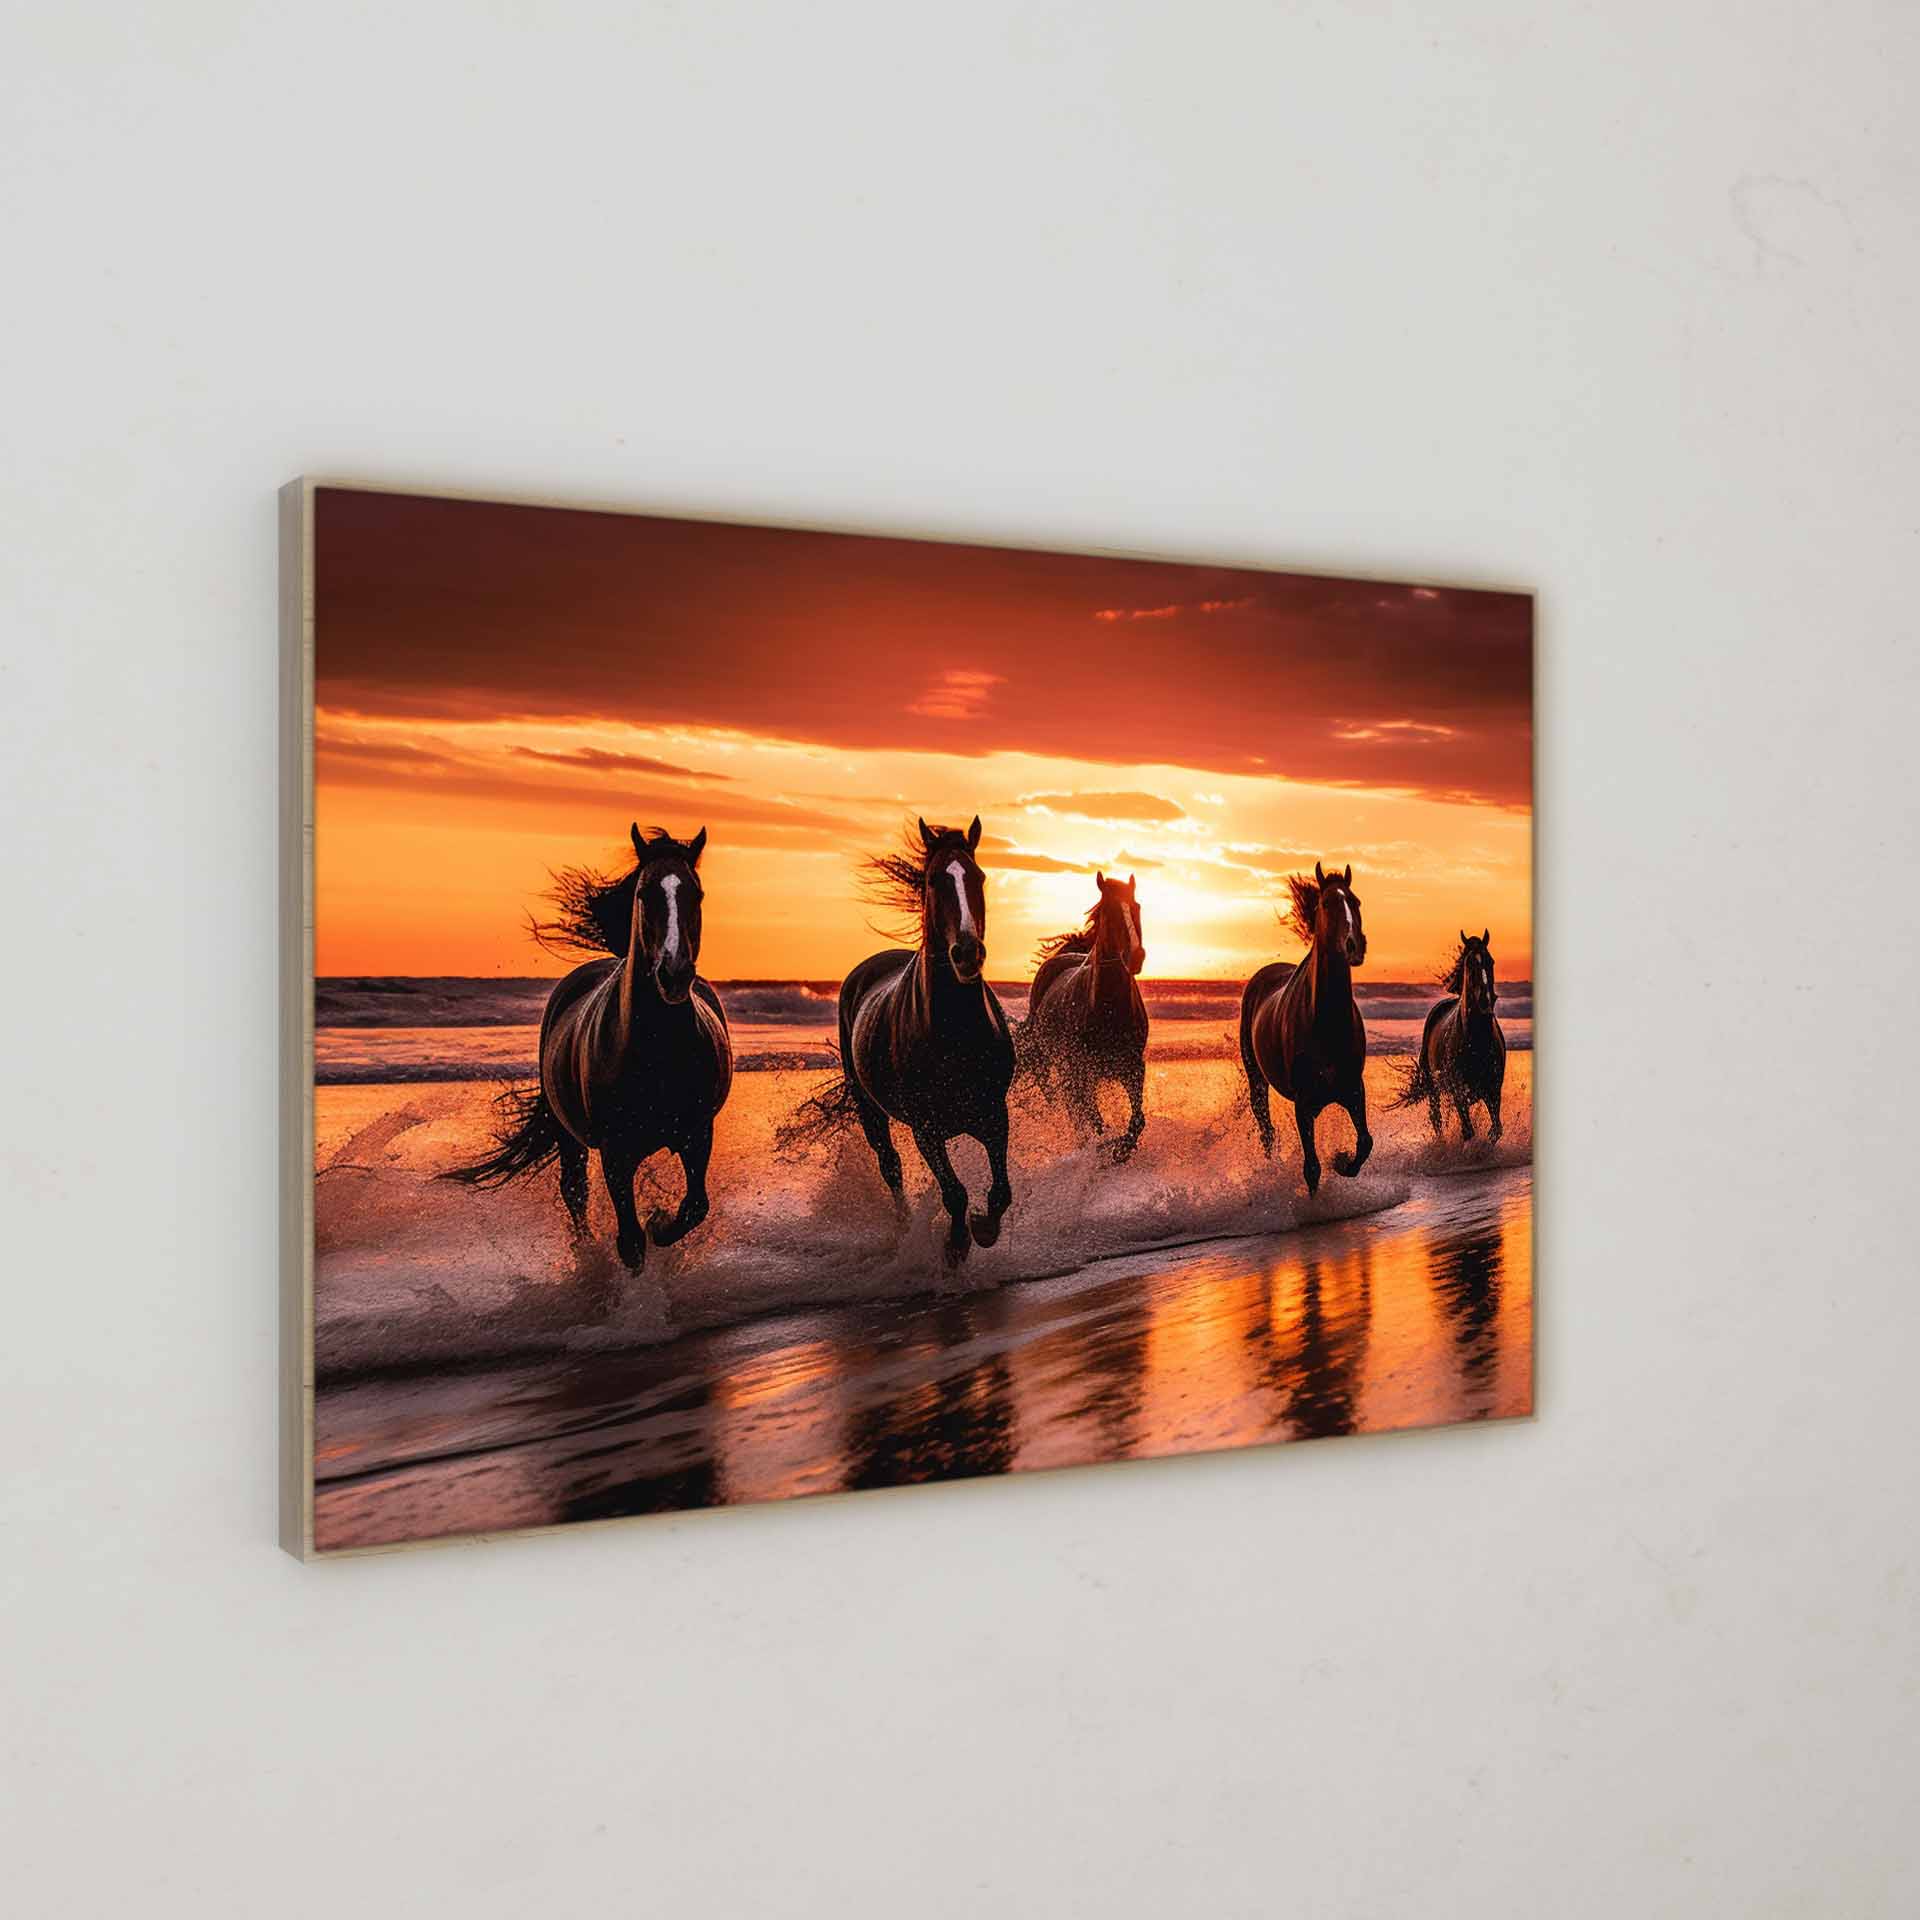 Tierfotografie | Pferde am Strand während des Sonnenunterganges | LED Bild